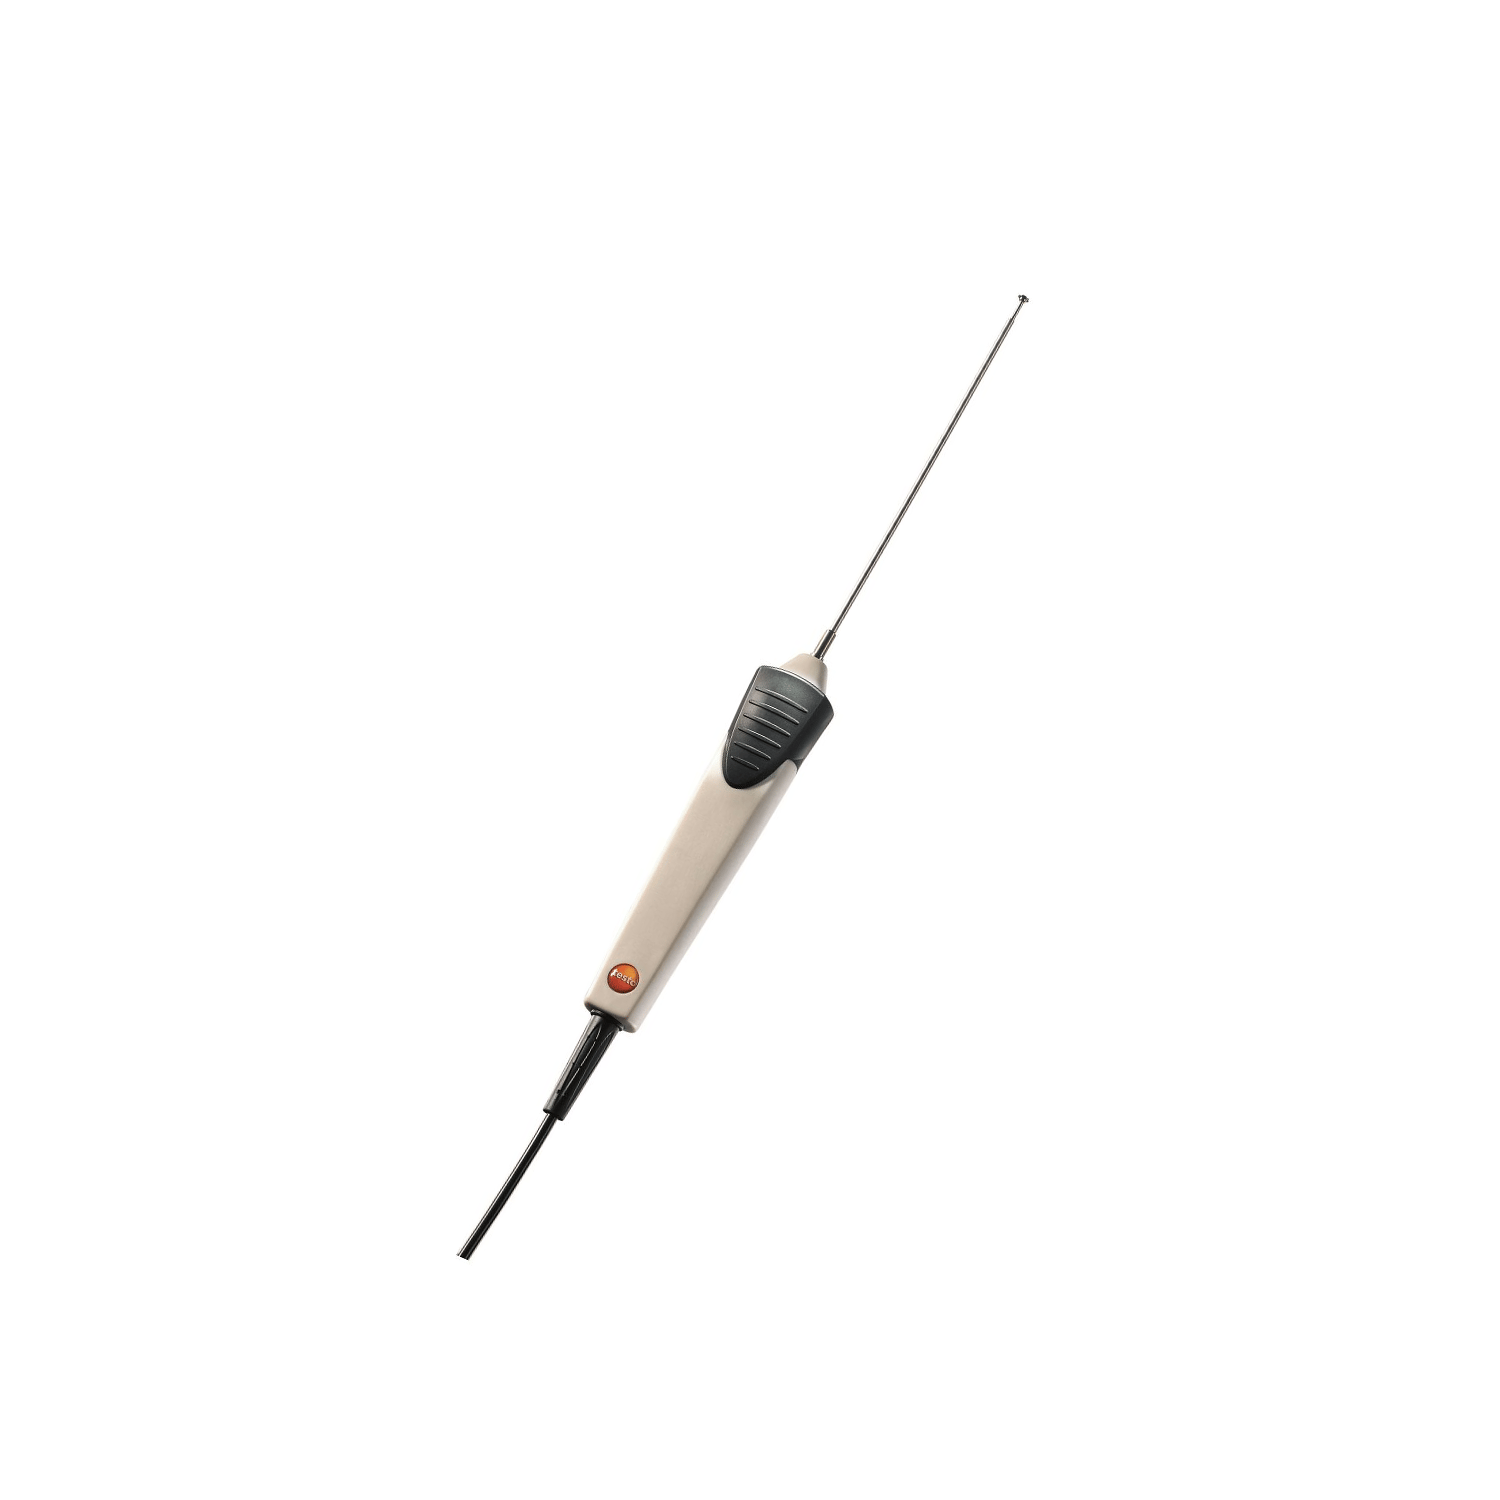 Sensor de temperatura superficial resistente al agua testo (-60 a +400 °C, cable de 1,2 m) TE Tipo K, 0602 1993